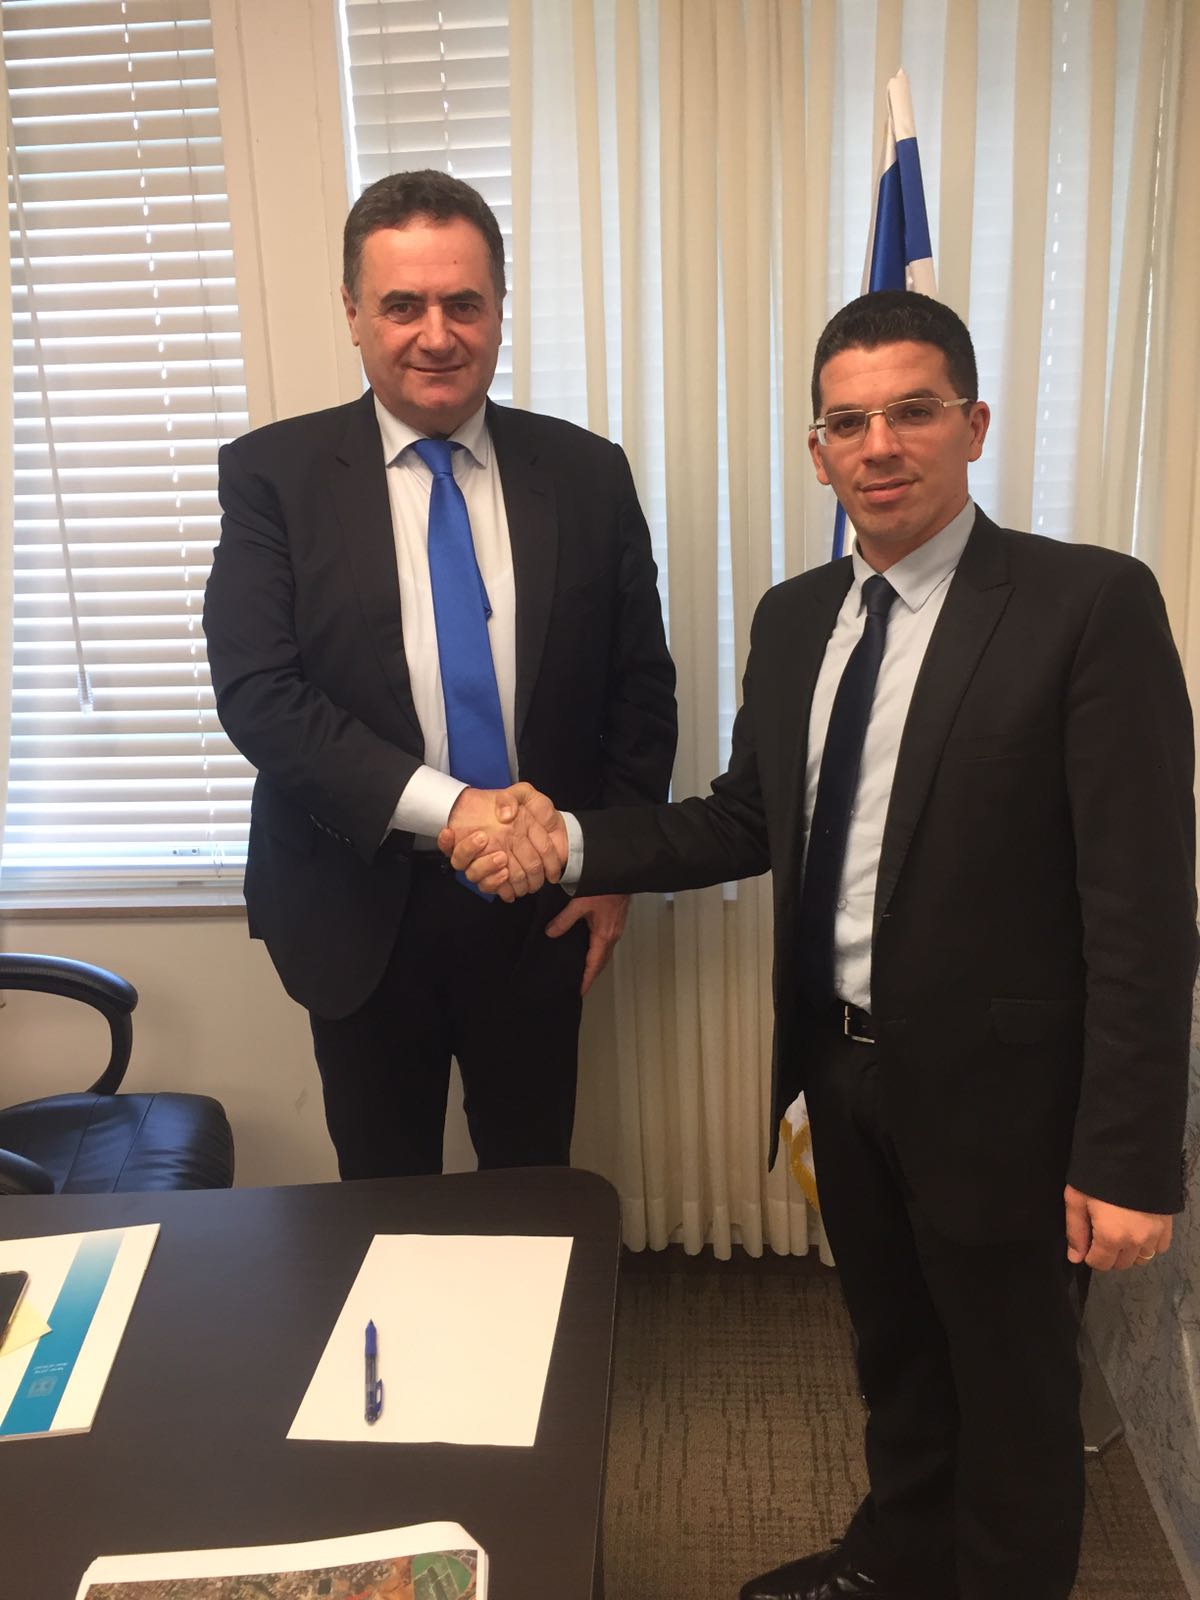 שר התחבורה ישראל כץ נפגש עם שלומי זינו והכריז על תמיכתו במועמדותו לראשות העיר נשר